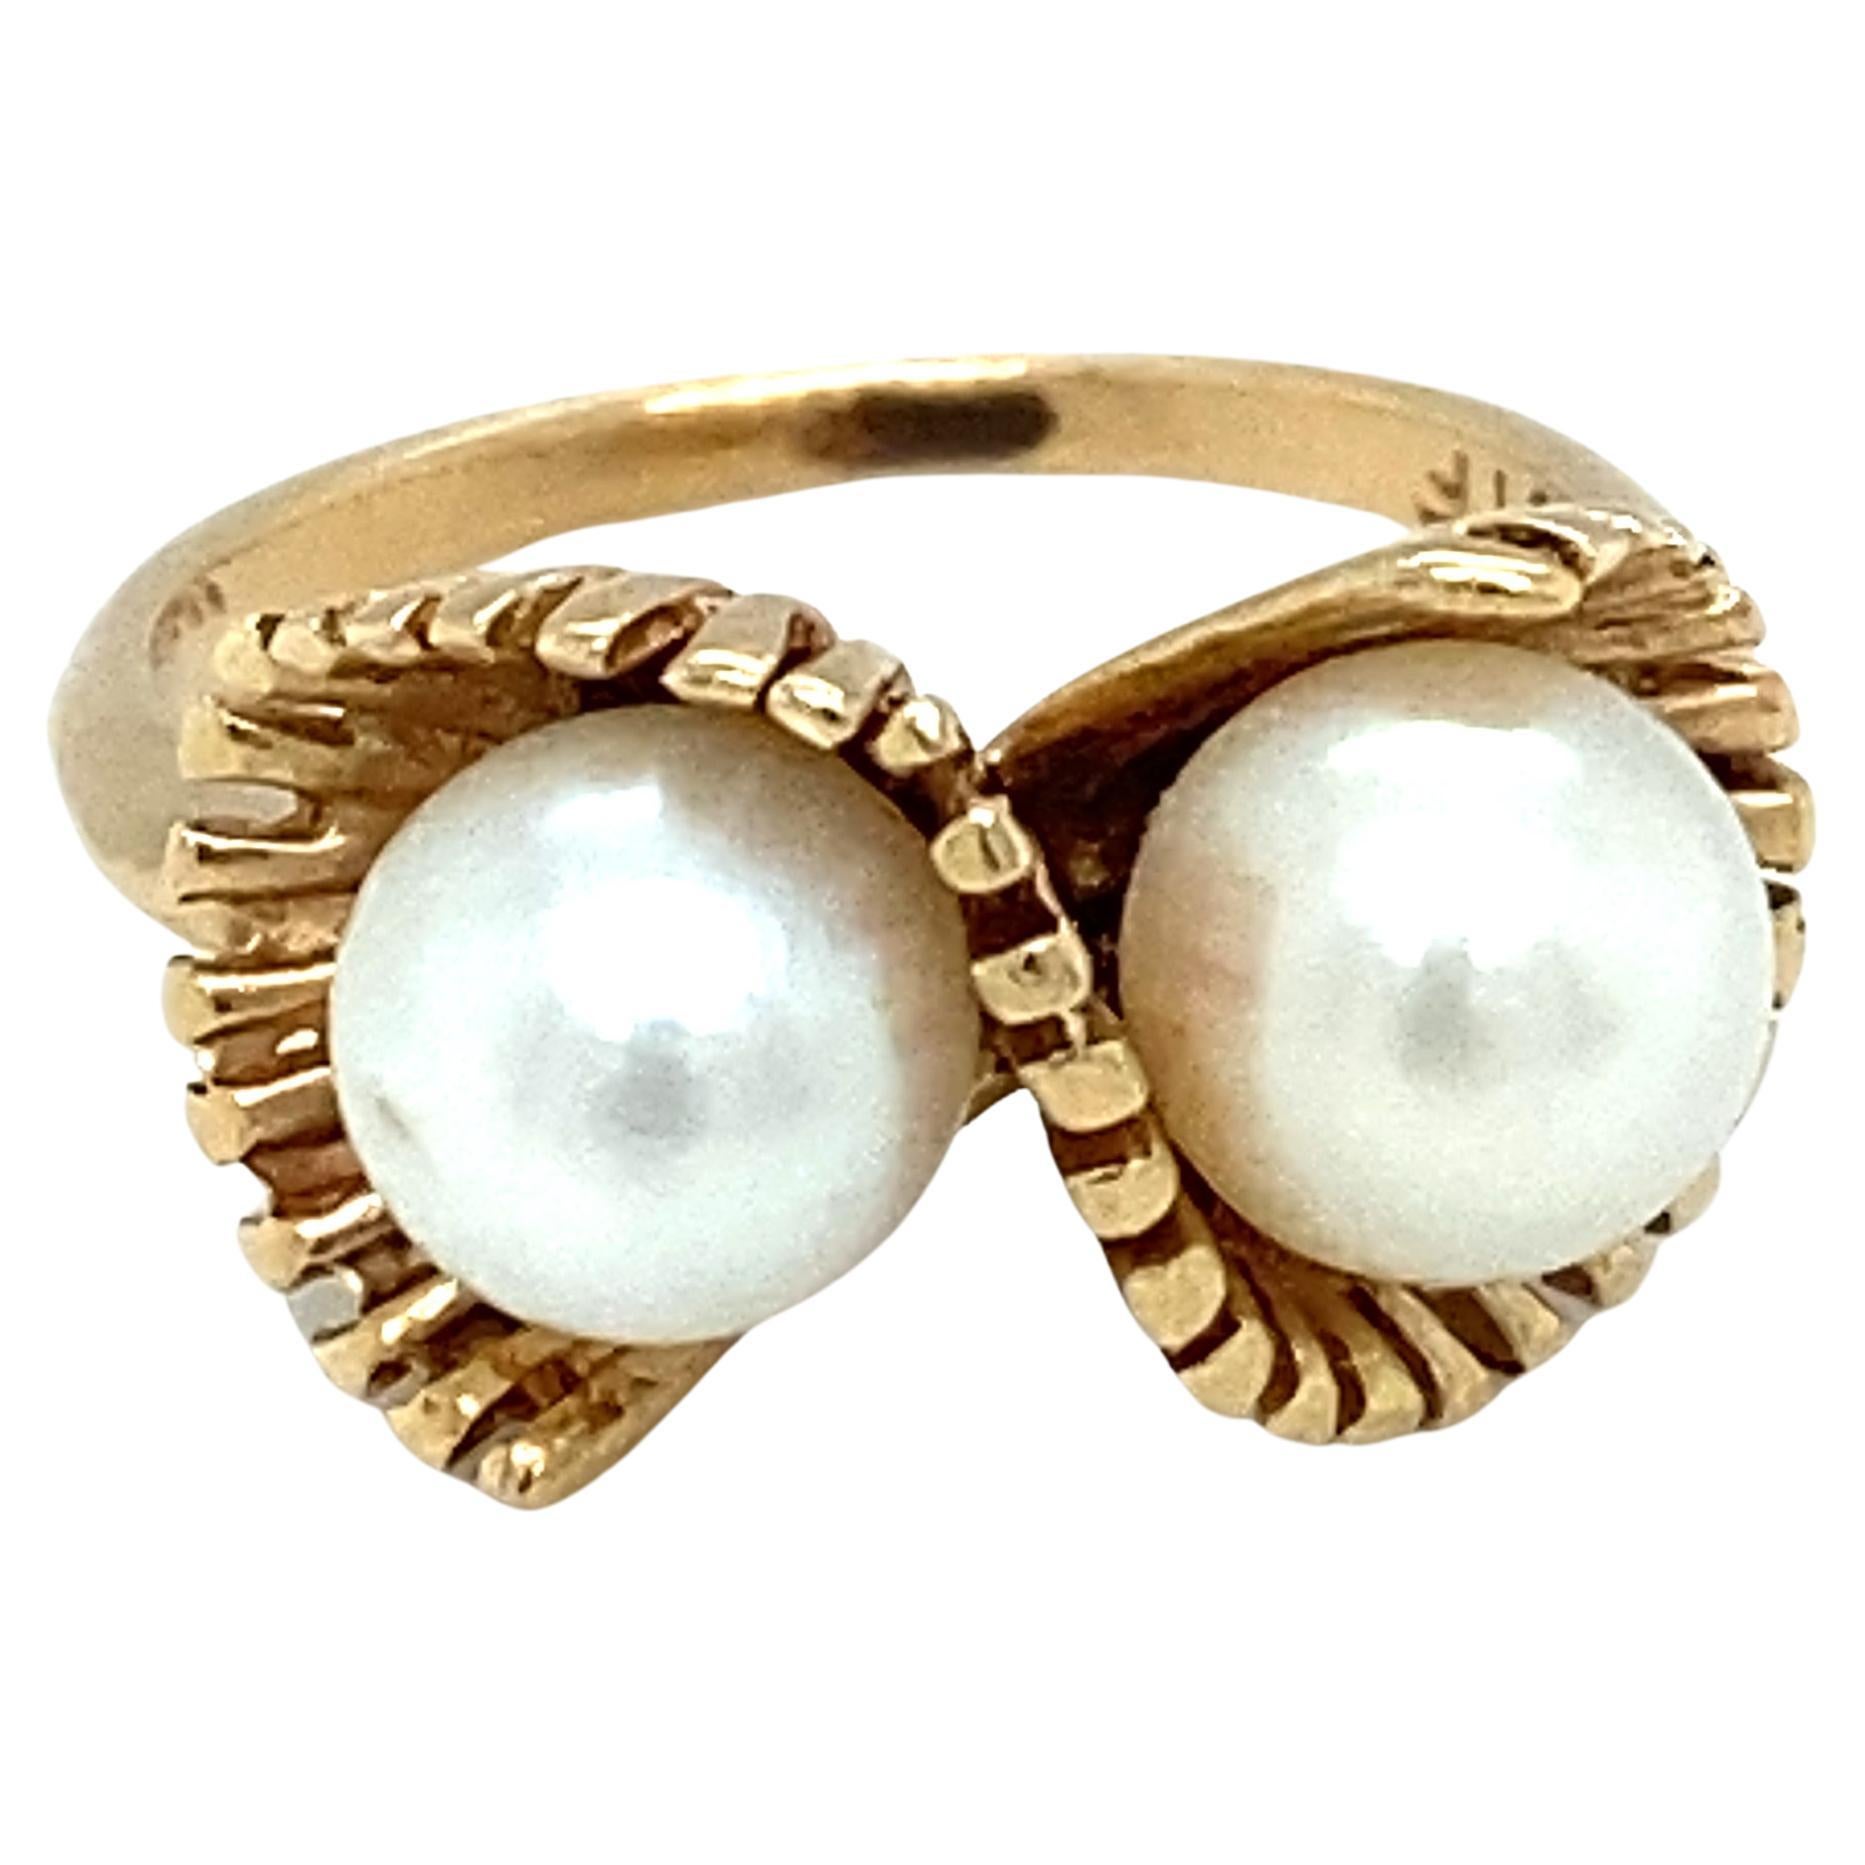 Circa 1950s Twin Pearl Ring in 14 Karat Gold